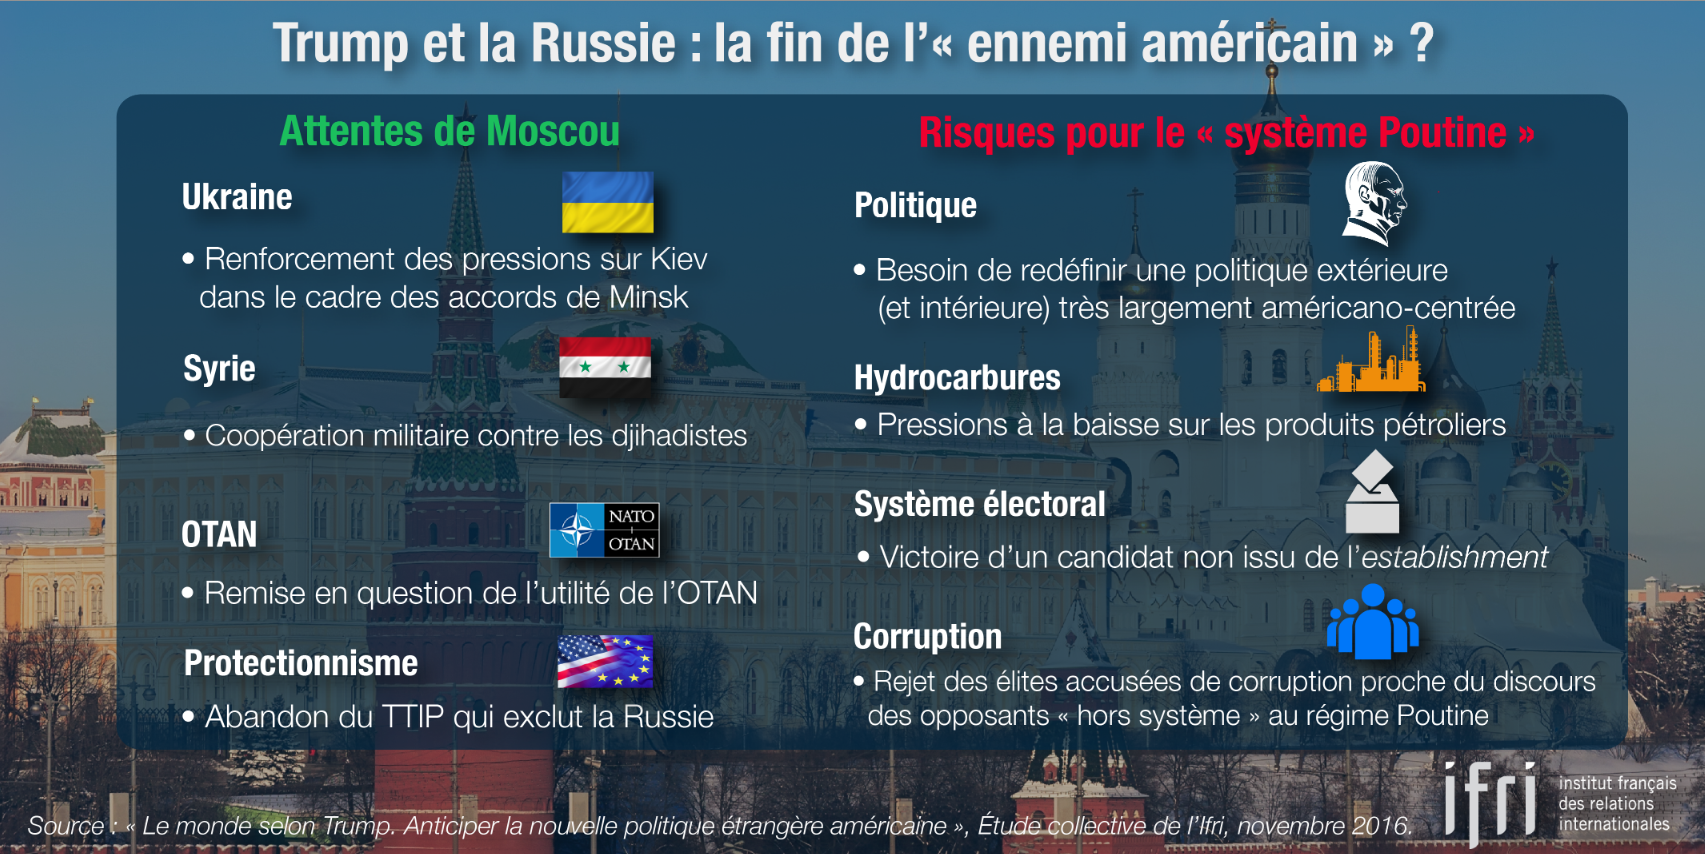 Trump et la Russie : la fin de "l'ennemi américain ?"